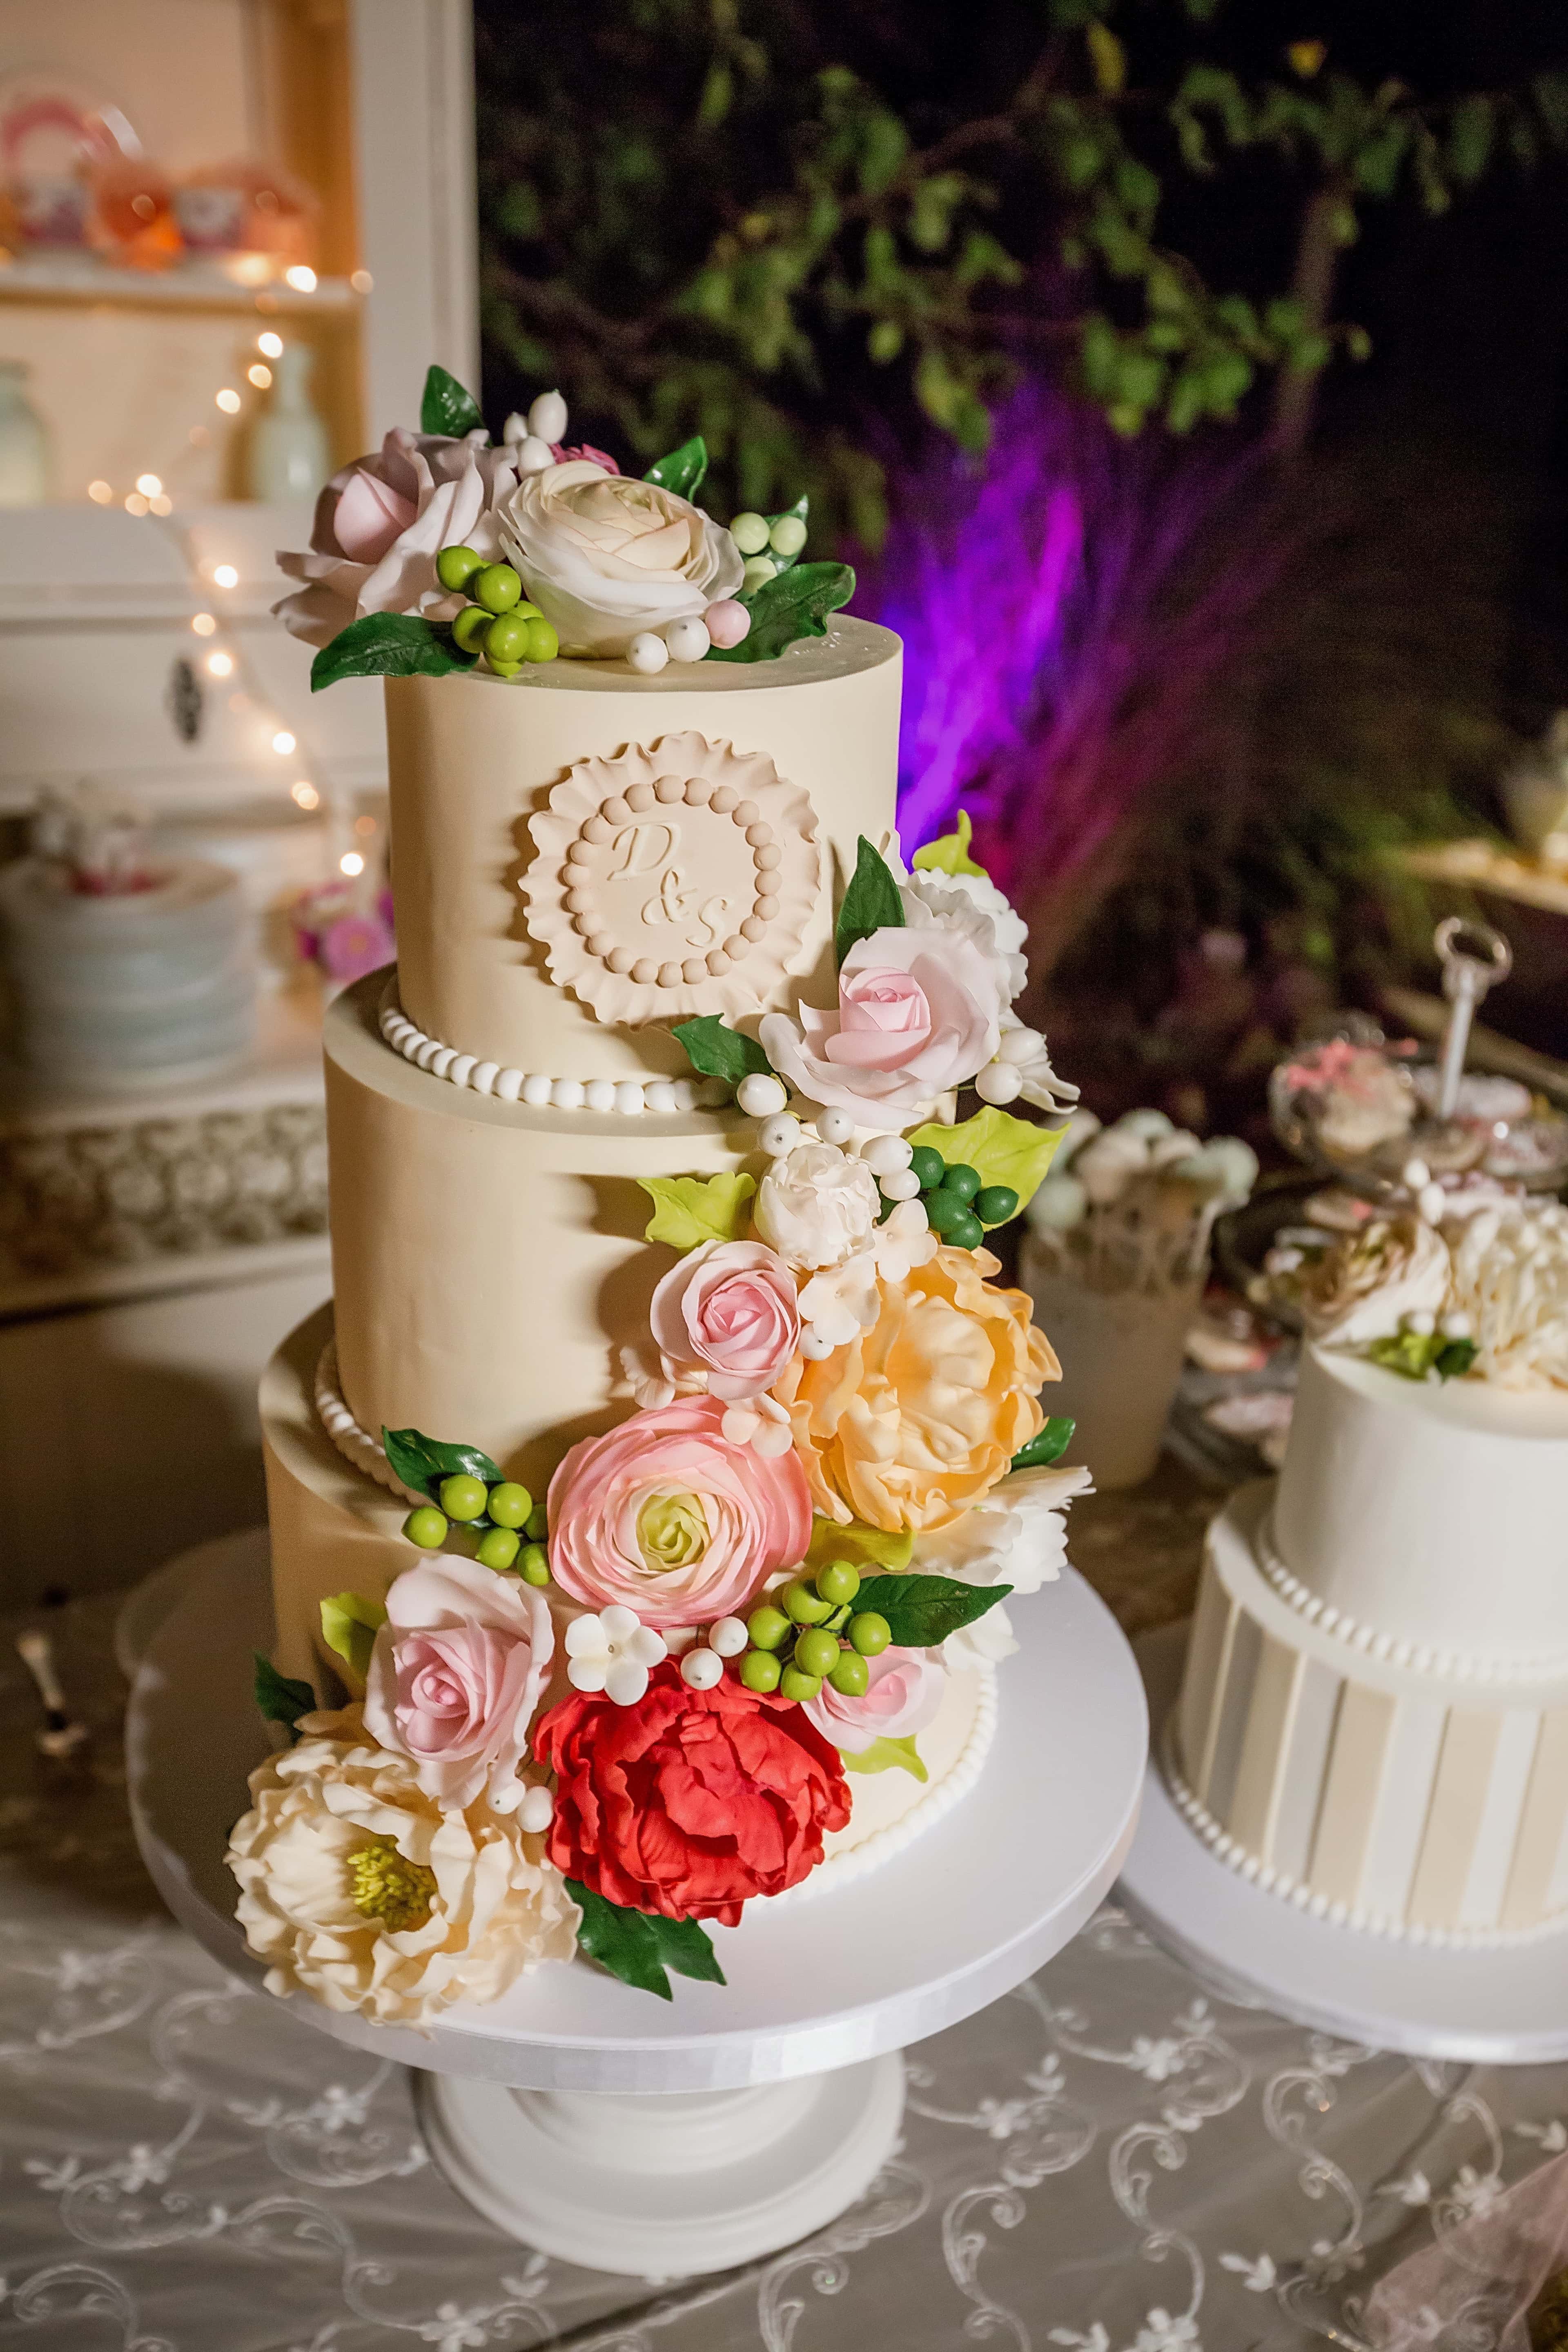 Gâteaux et bouquets de bonbons - Mariage